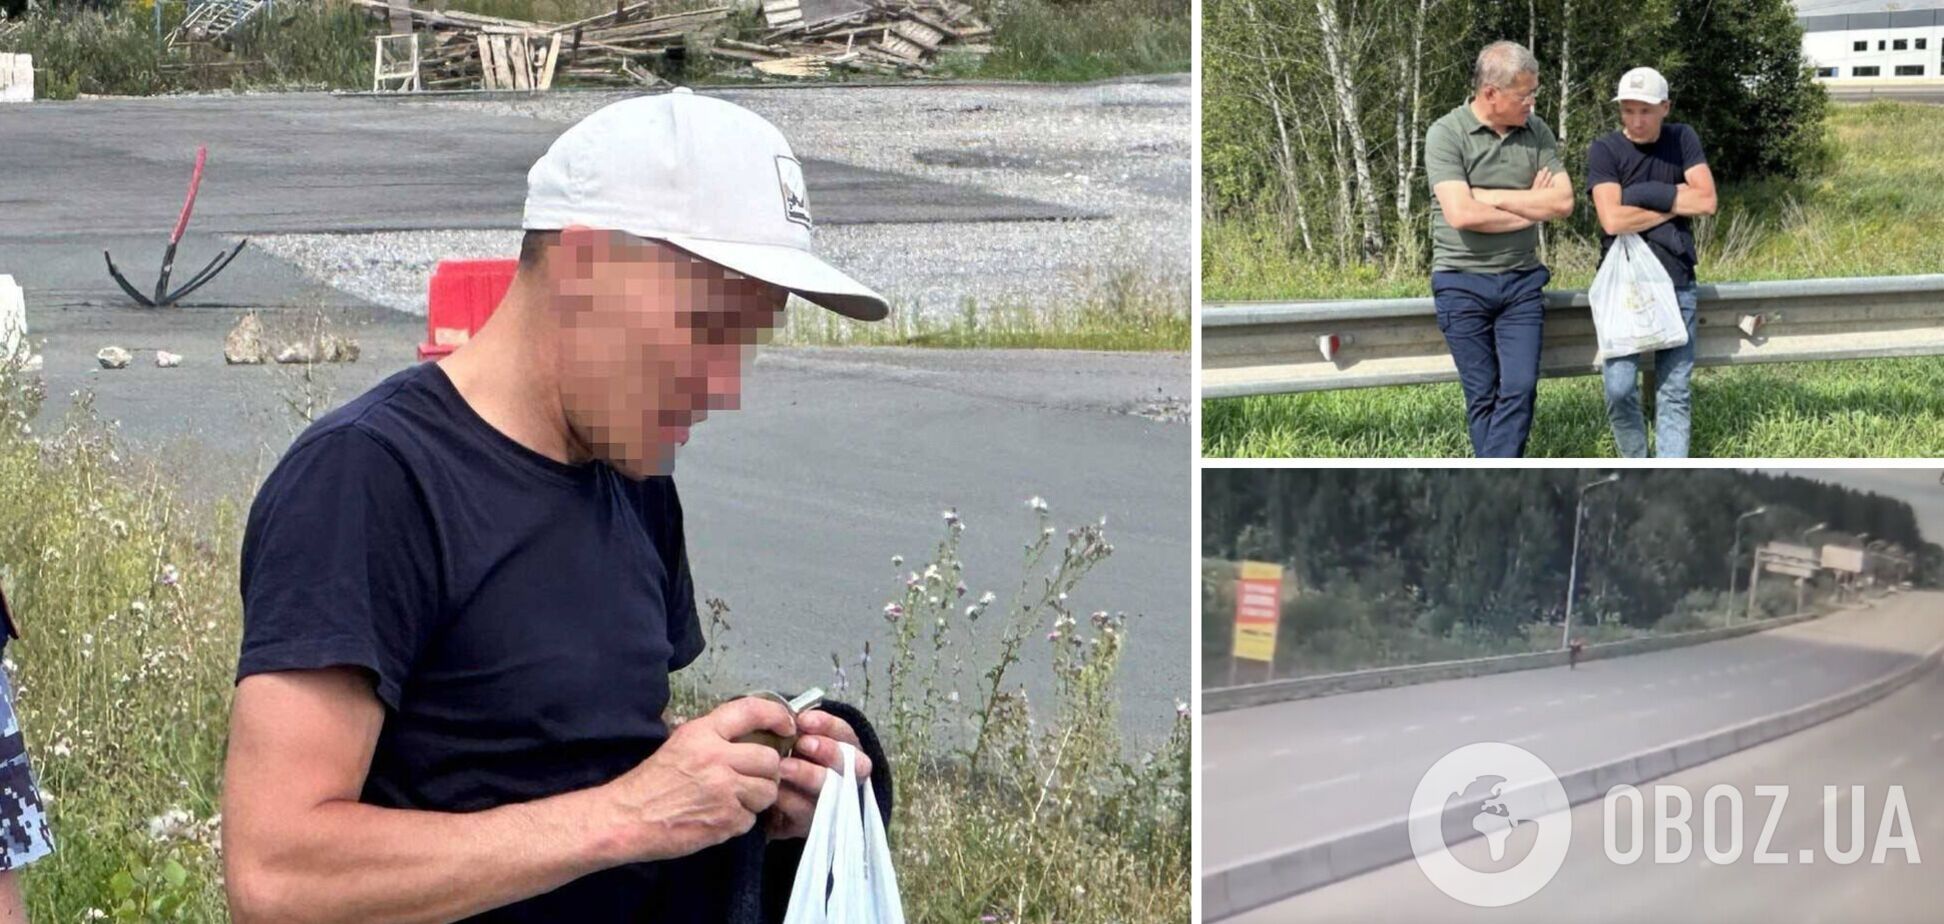 В российской Уфе перекрывали шоссе из-за дезертира с гранатой, который сбежал от психиатра. Фото и видео